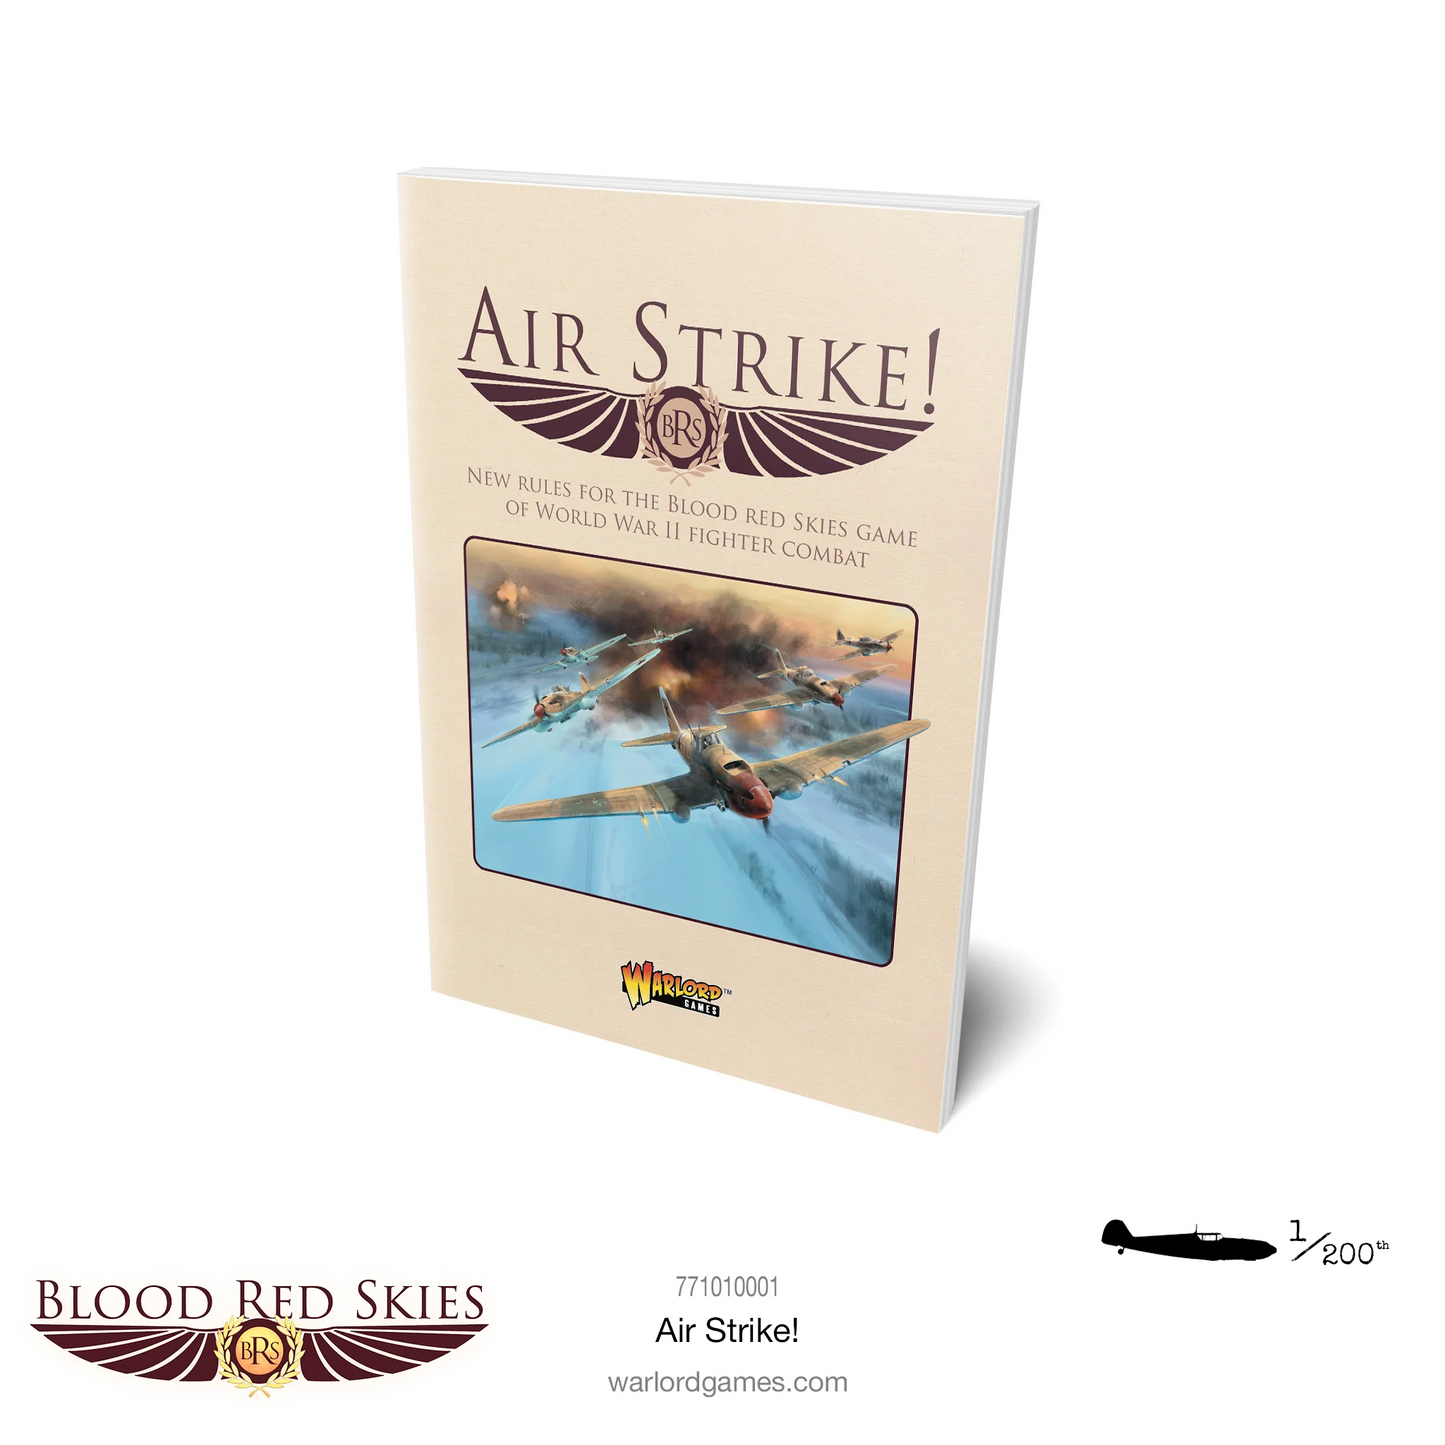 BA BLOOD RED SKIES AIR STRIKE! BOOK